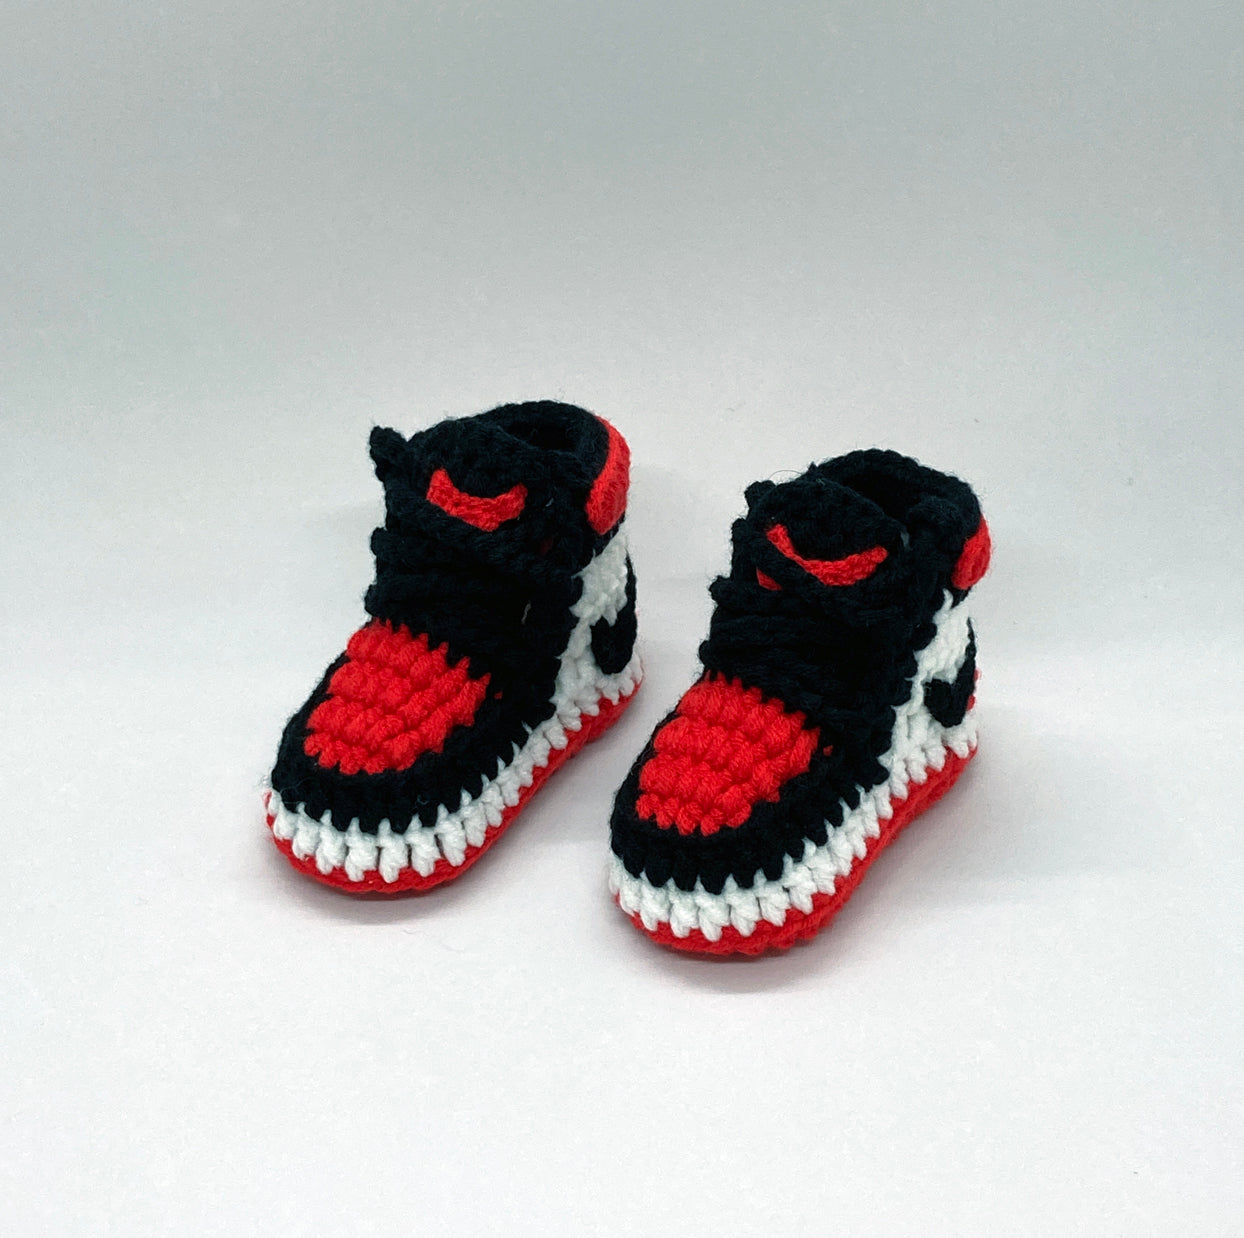 newborn crochet shoes air jordan 1